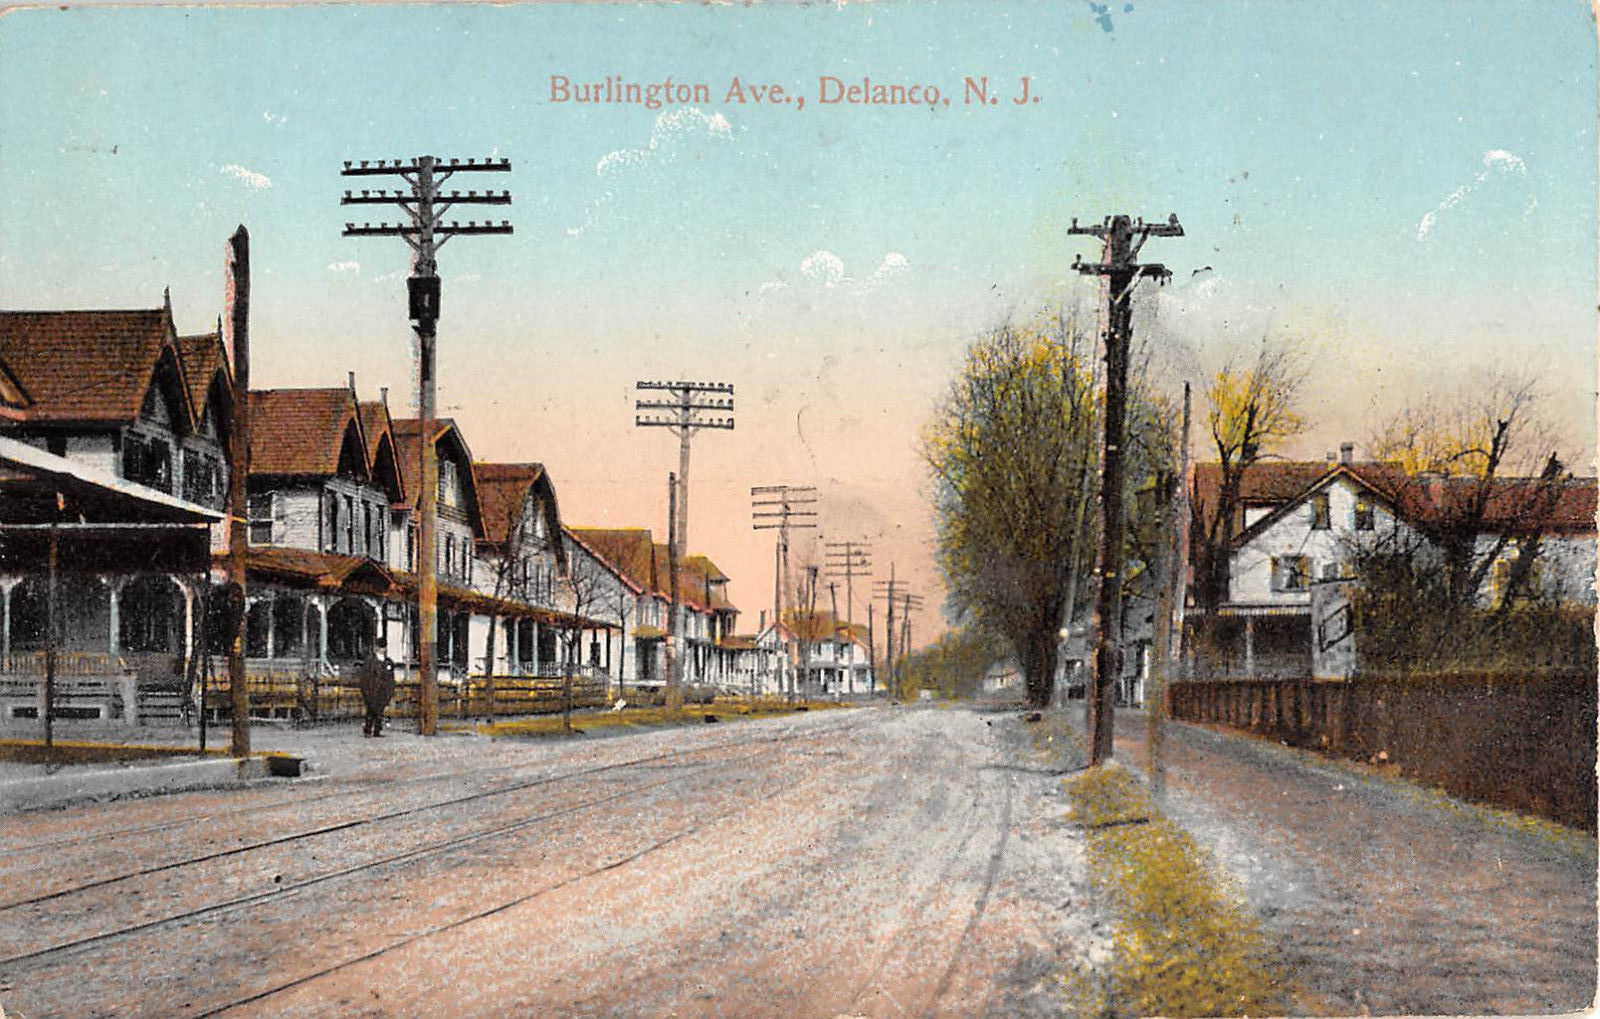 Delanco - Homes on Burlington Avenue - c 1910